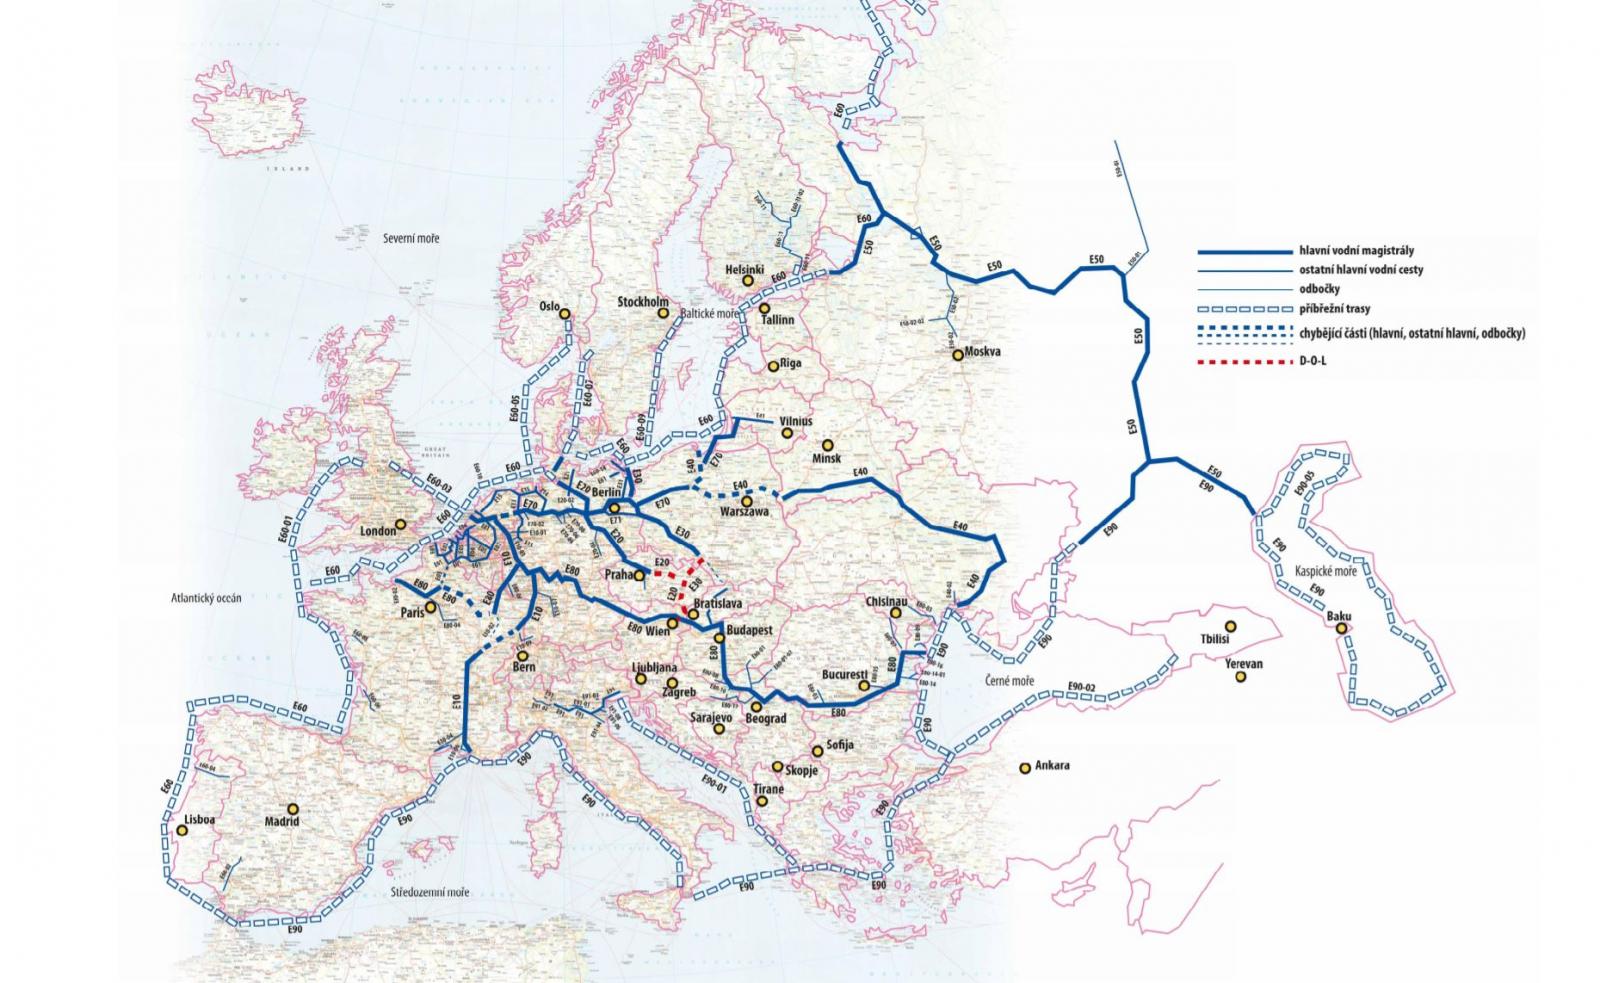 Речной транспорт карта. Карта речных путей Европы. Речной транспорт Европы карта. Карта судоходных рек Европы. Водные пути Германии карта.